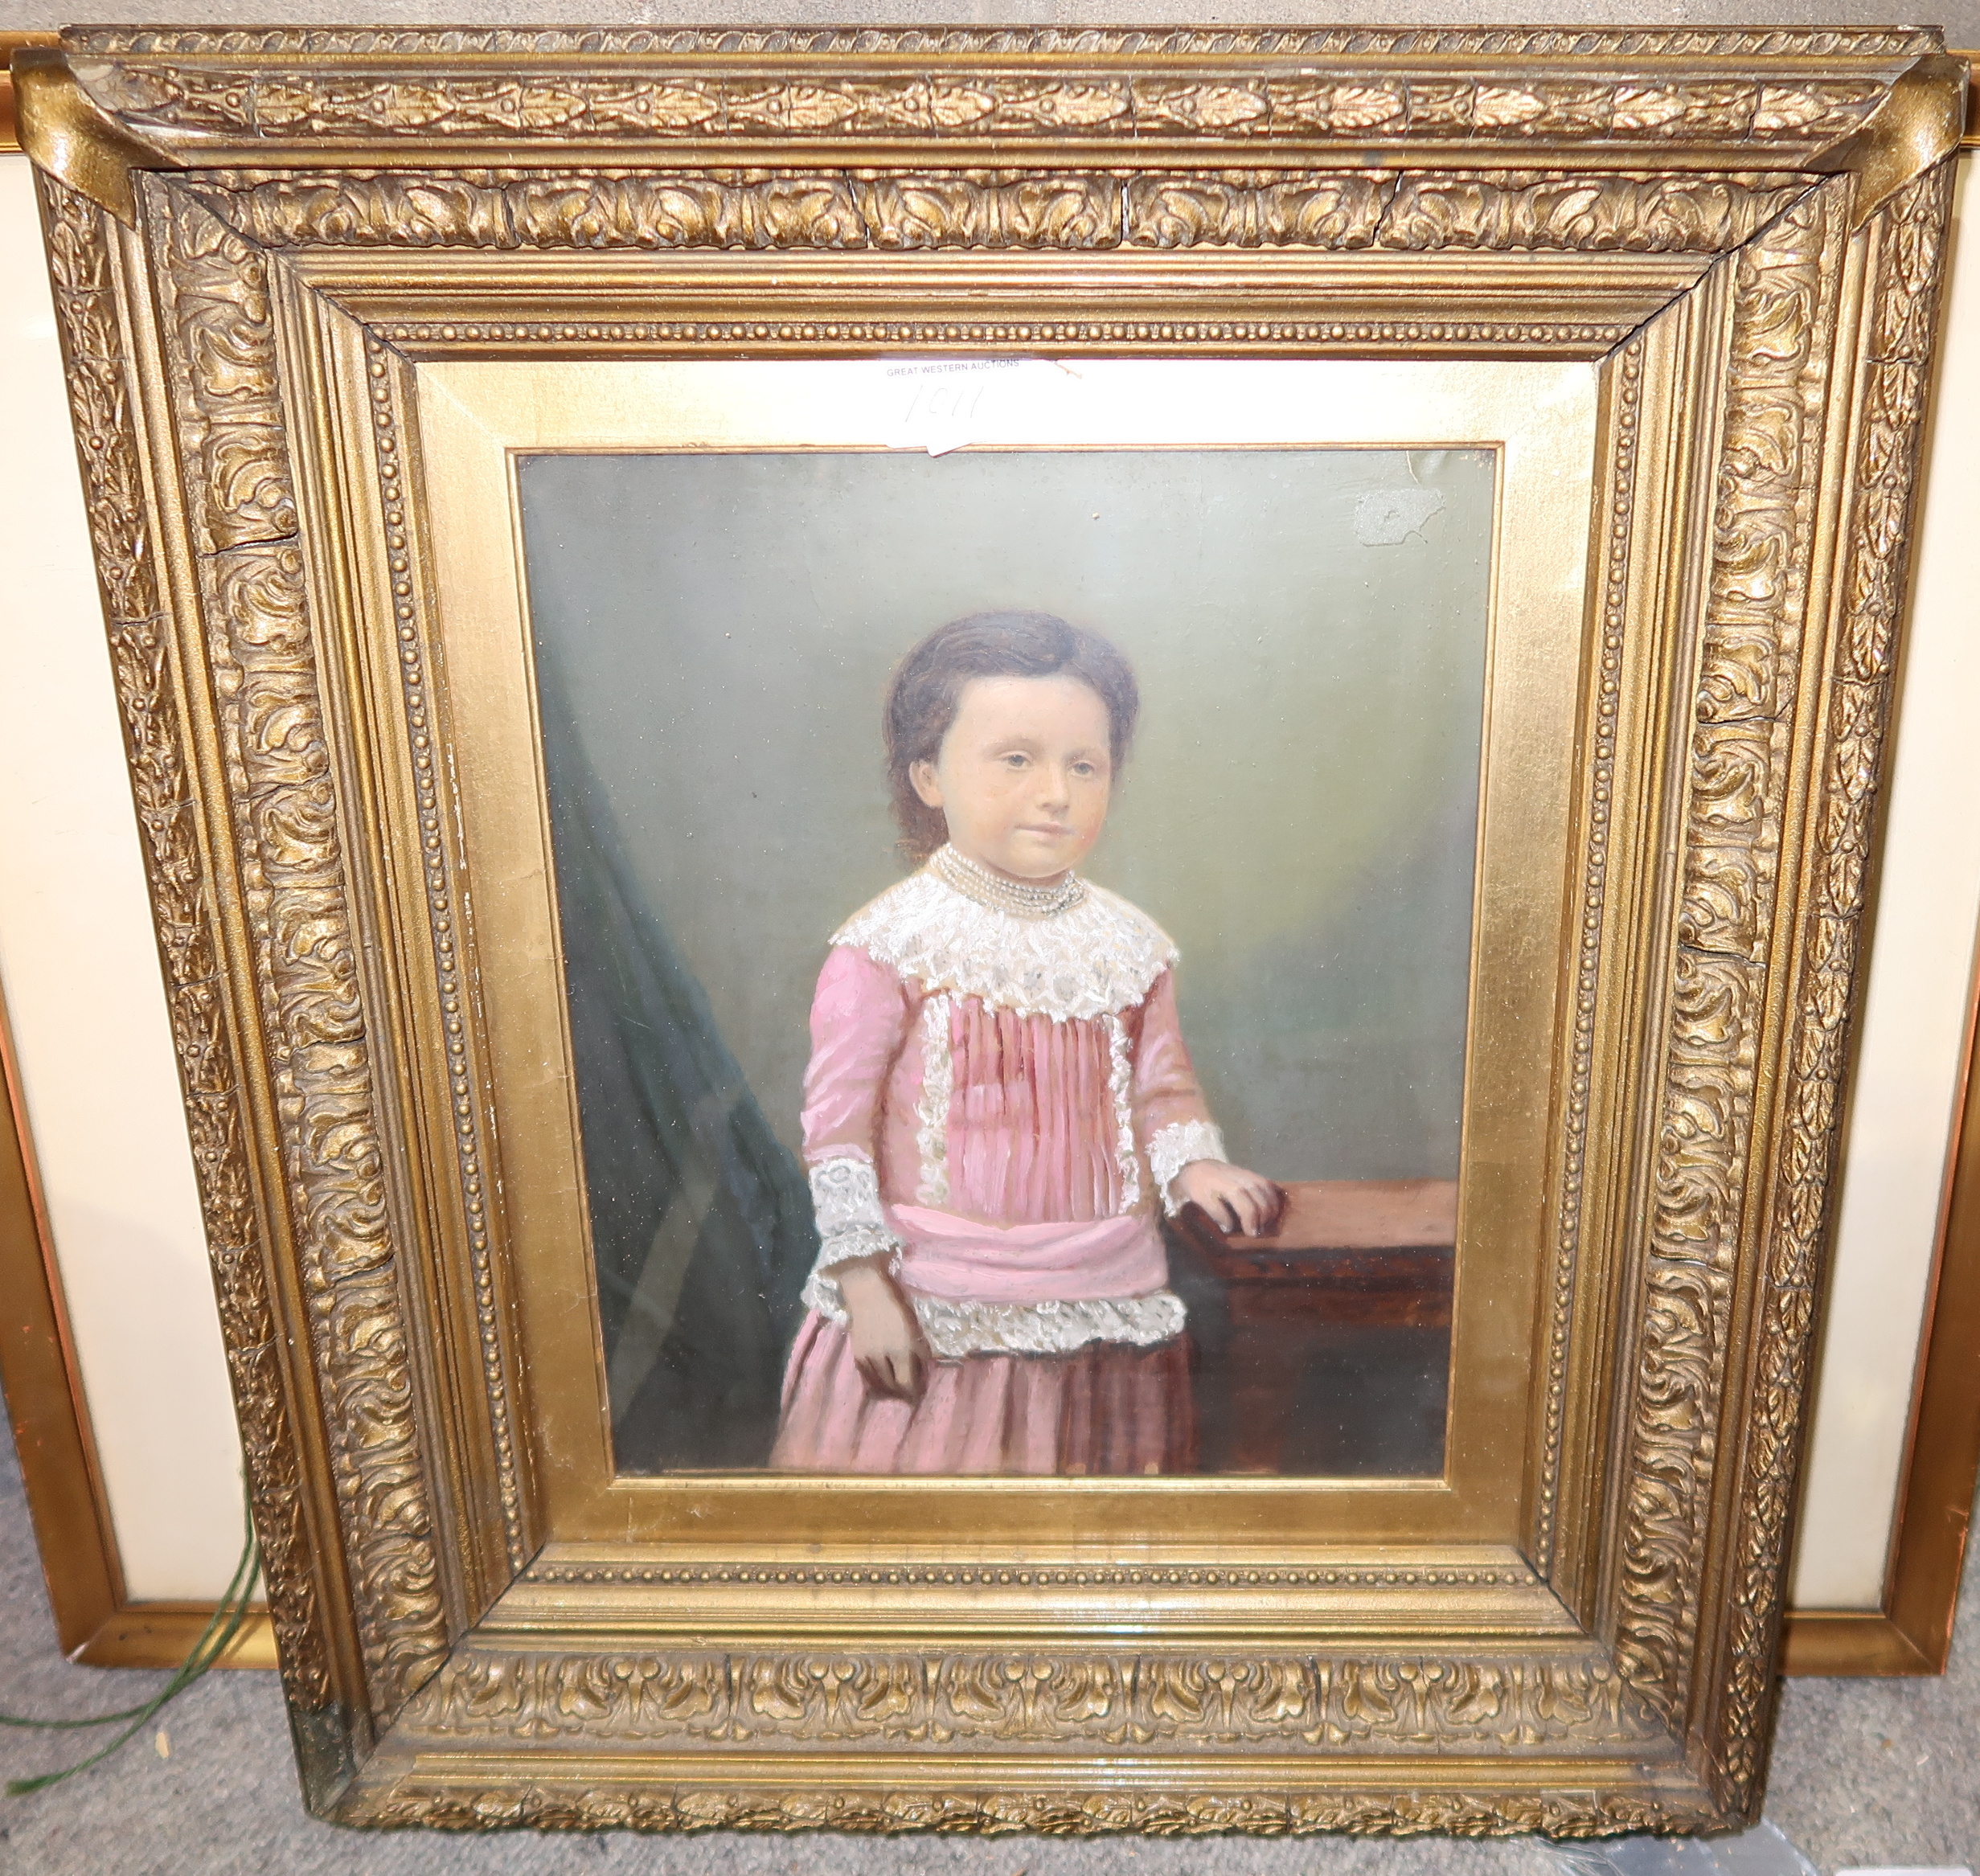 PETER BUCHANAN In Lunan Bay, oil on board, 24 x 35cm, J MIDDLETON portrait of a girl, 30 x 25cm - Image 2 of 4